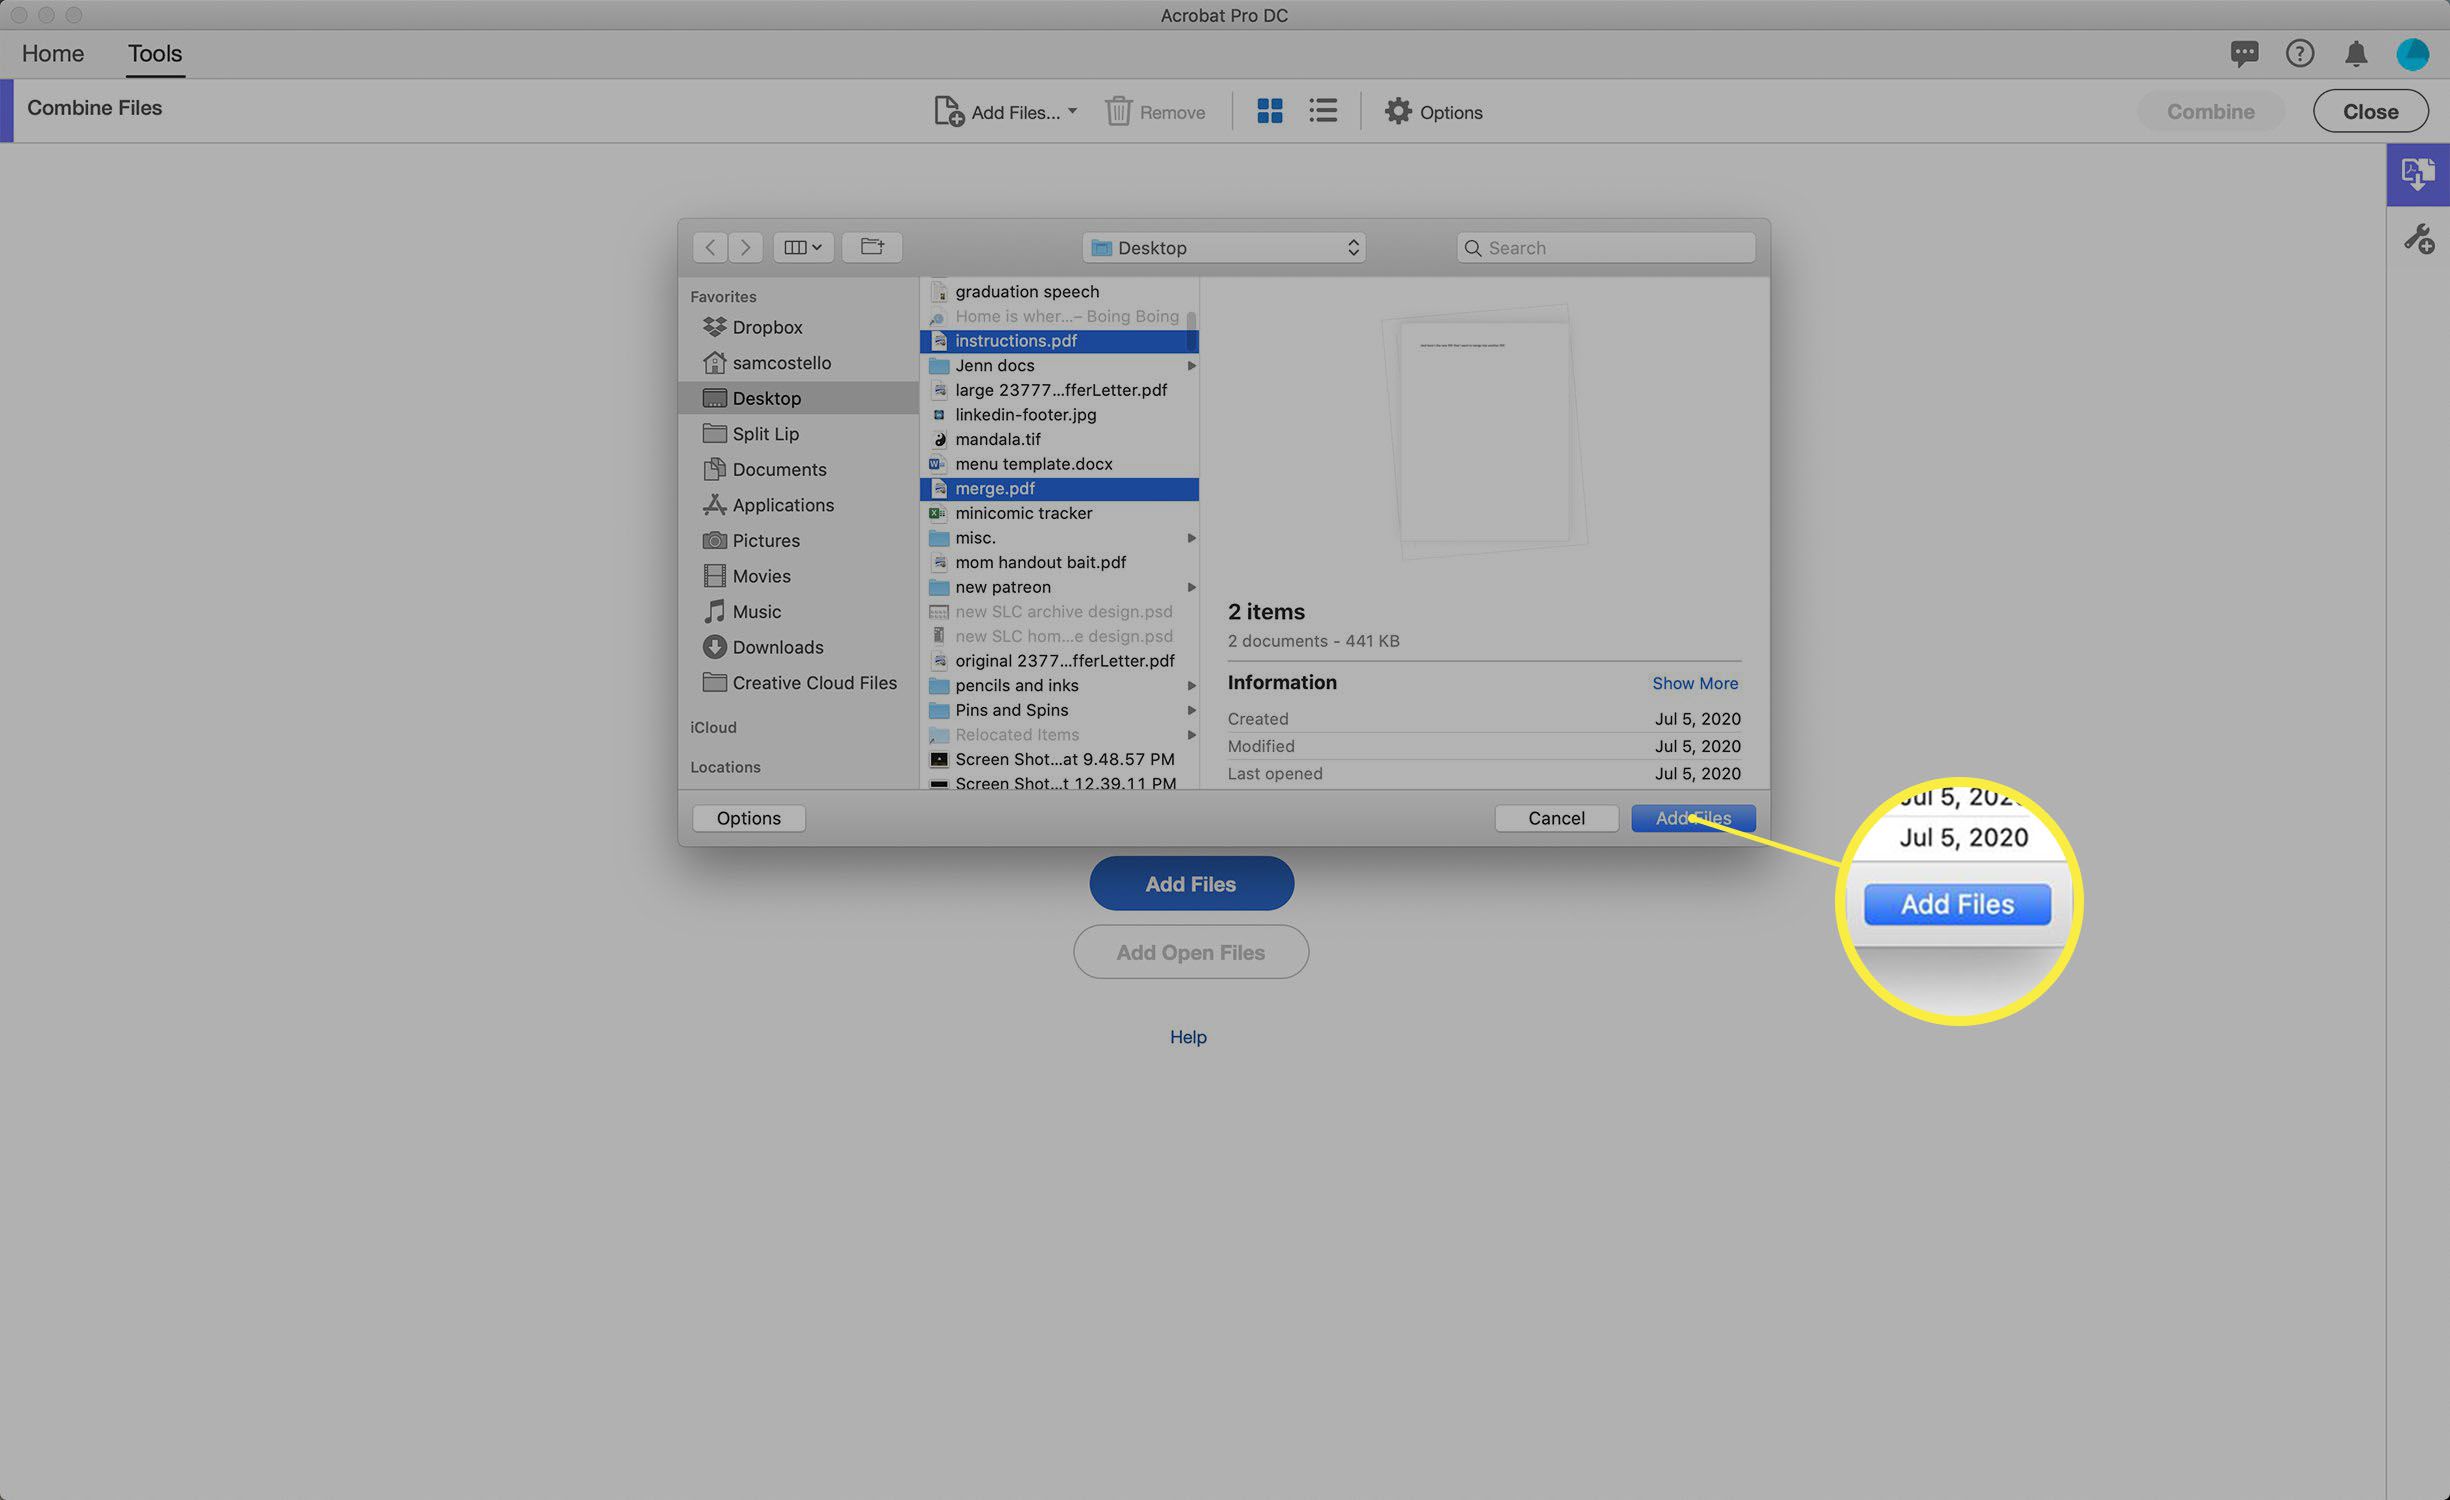 Captura de tela da combinação de PDFs no Adobe Acrobat.